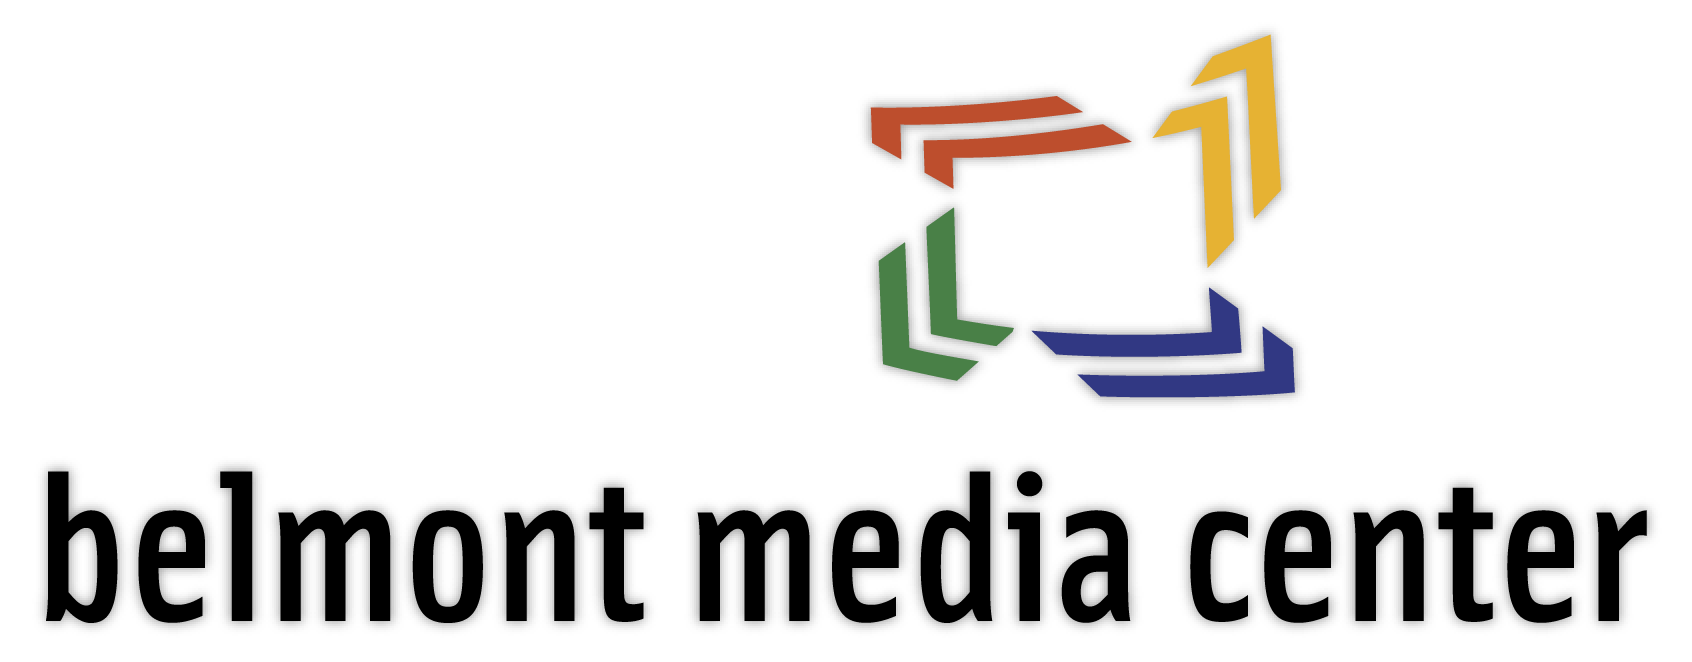 Belmont Media Center Logo